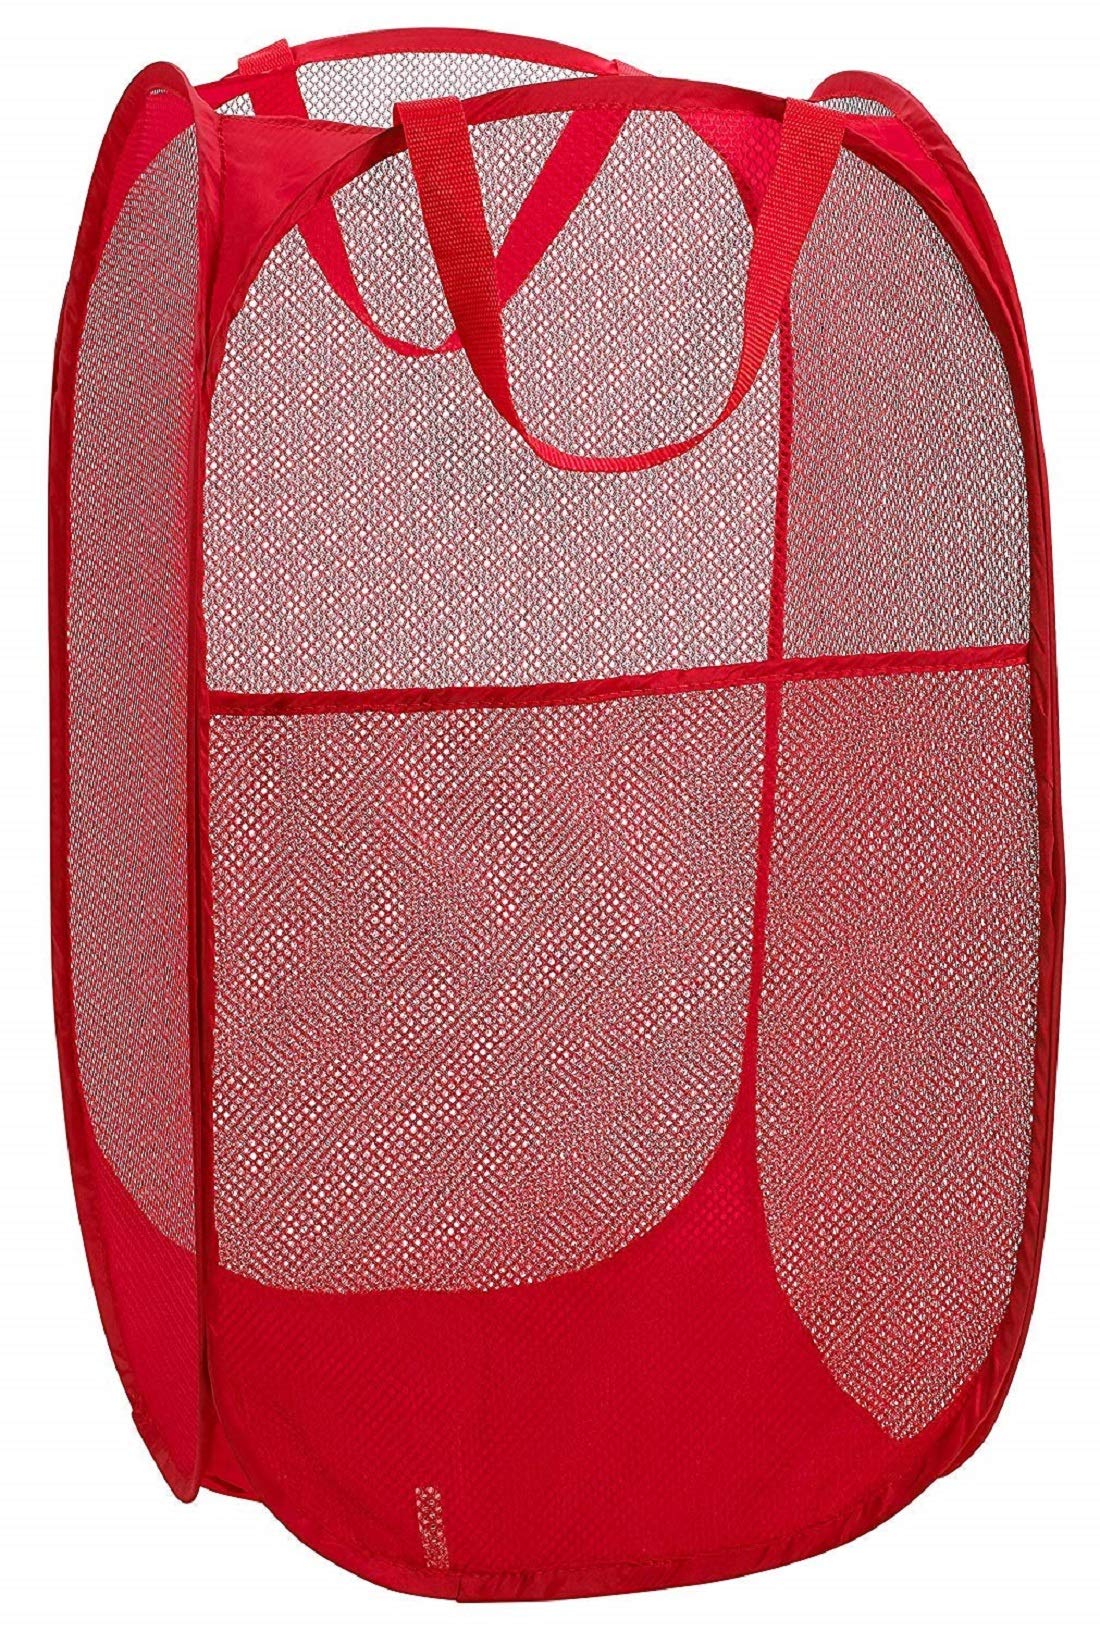 Kuber Industries Nylon Mesh Laundry Basket,30Ltr (Multi)-CTKTC21482, Standard